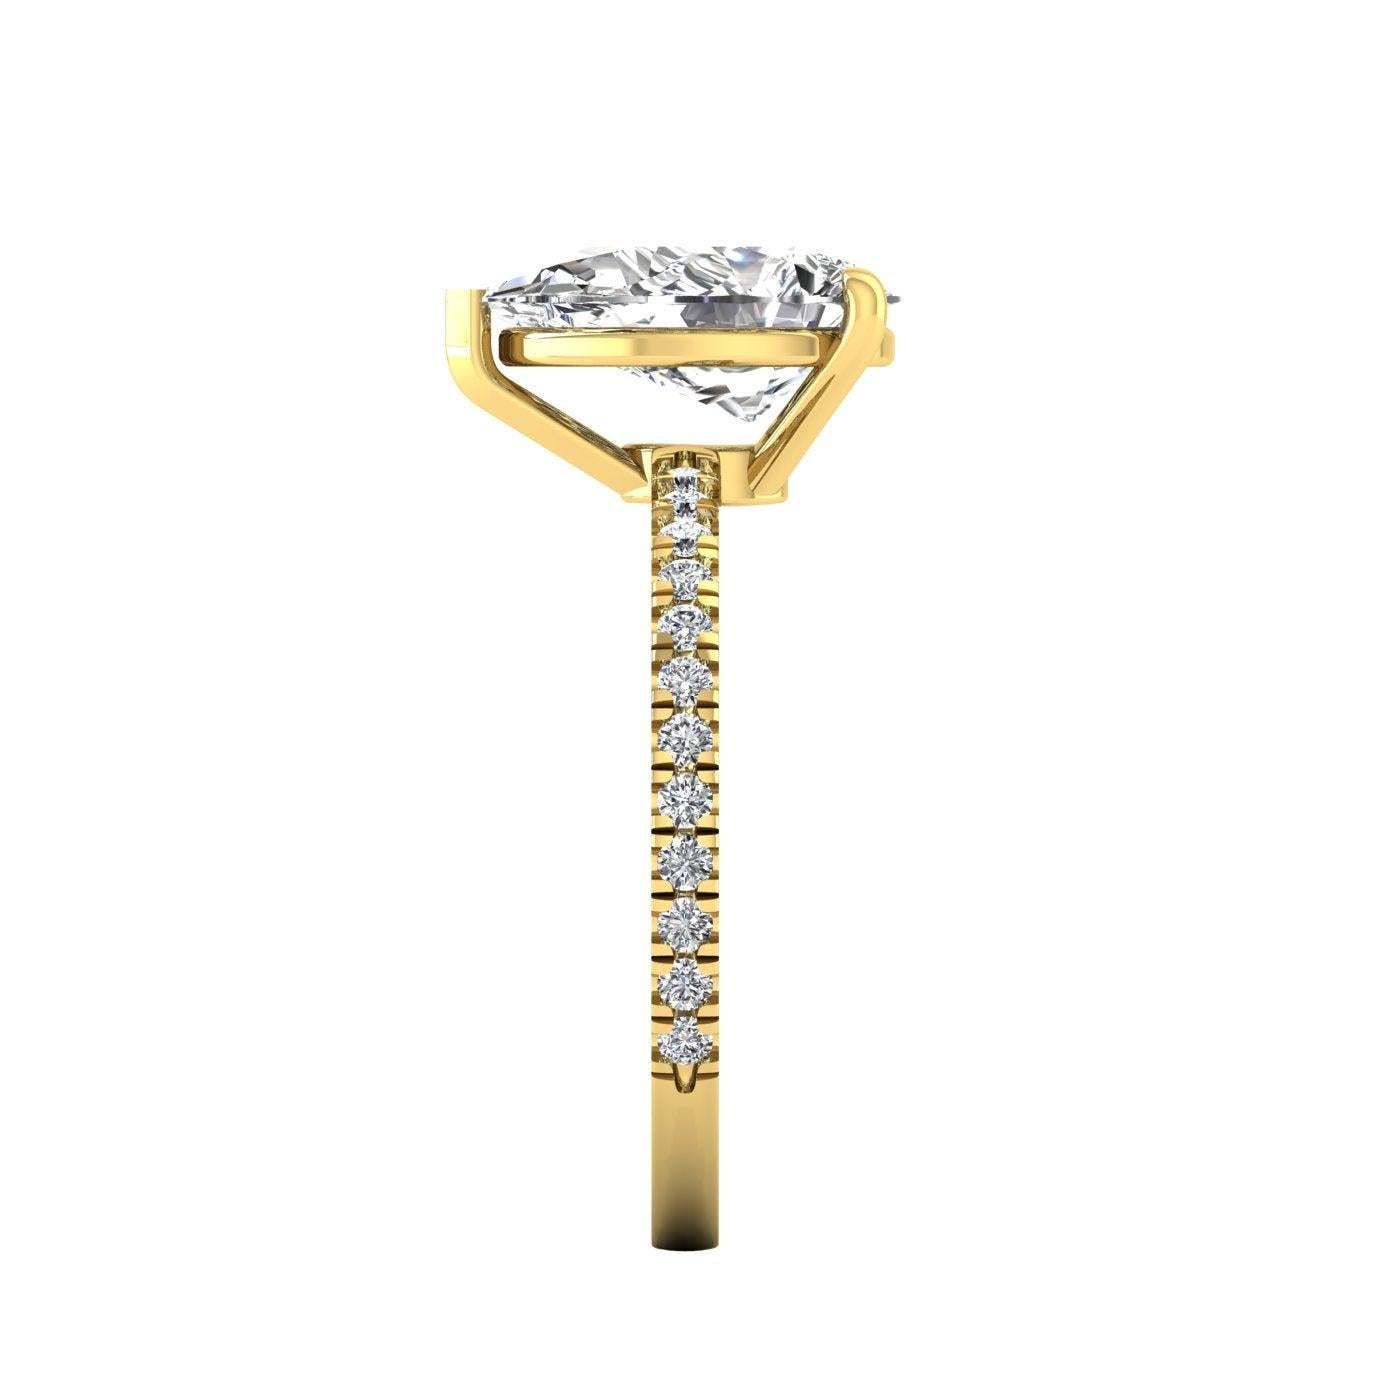 For Sale:  14 Karat Yellow Gold Pear Diamond with Pavé 2 Carat Center '2.3 Carat' H SI1 GIA 4